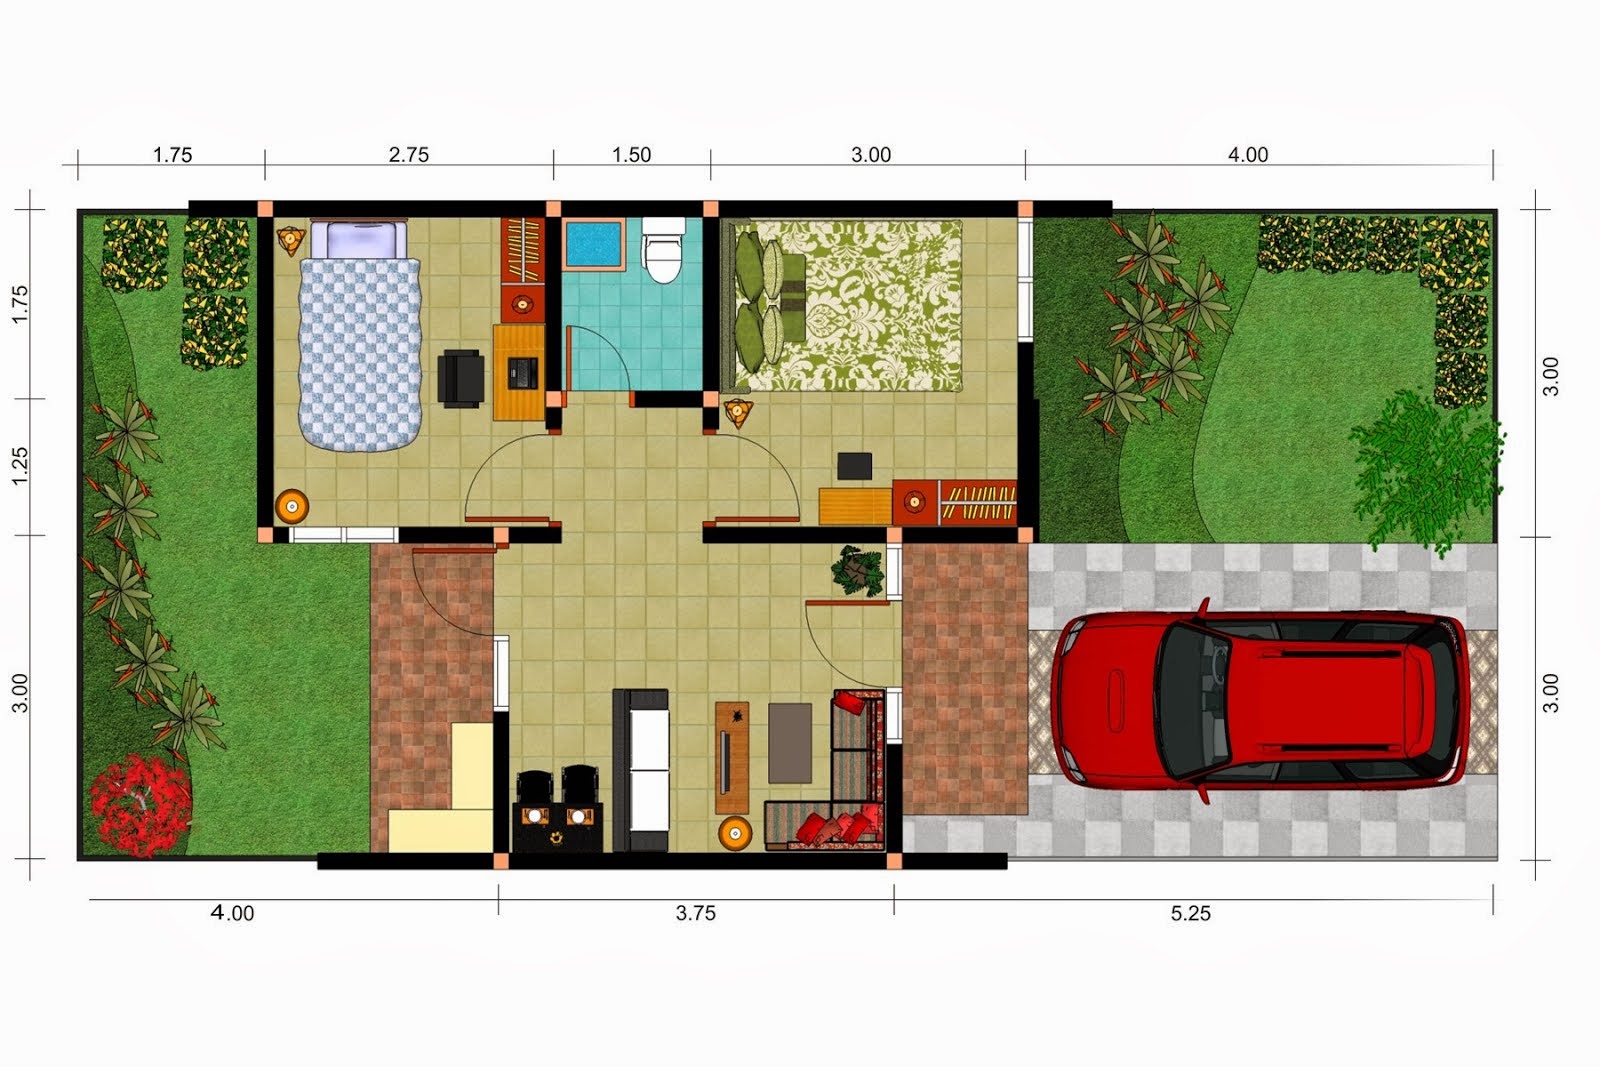 Contoh Denah Atau Sketsa Rumah Minimalis Terbaru Desain Denah